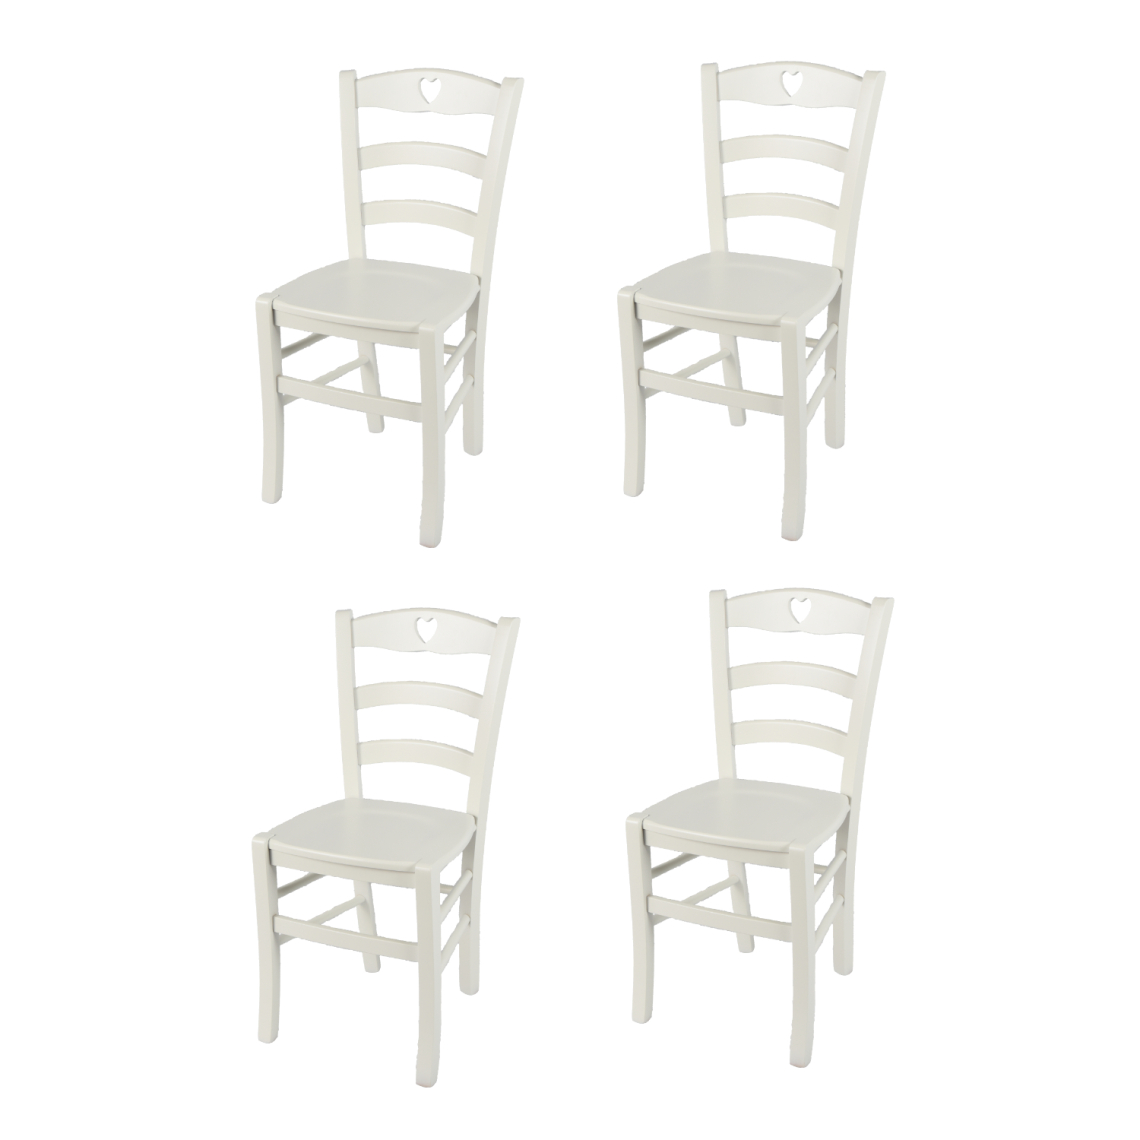 T M C S - t m c s Tommychairs - Set 4 Chaises CUORE pour cuisine, bar et salle à manger, robuste structure en bois de hêtre peindré en couleur blanc glace et assise en bois - Chaises